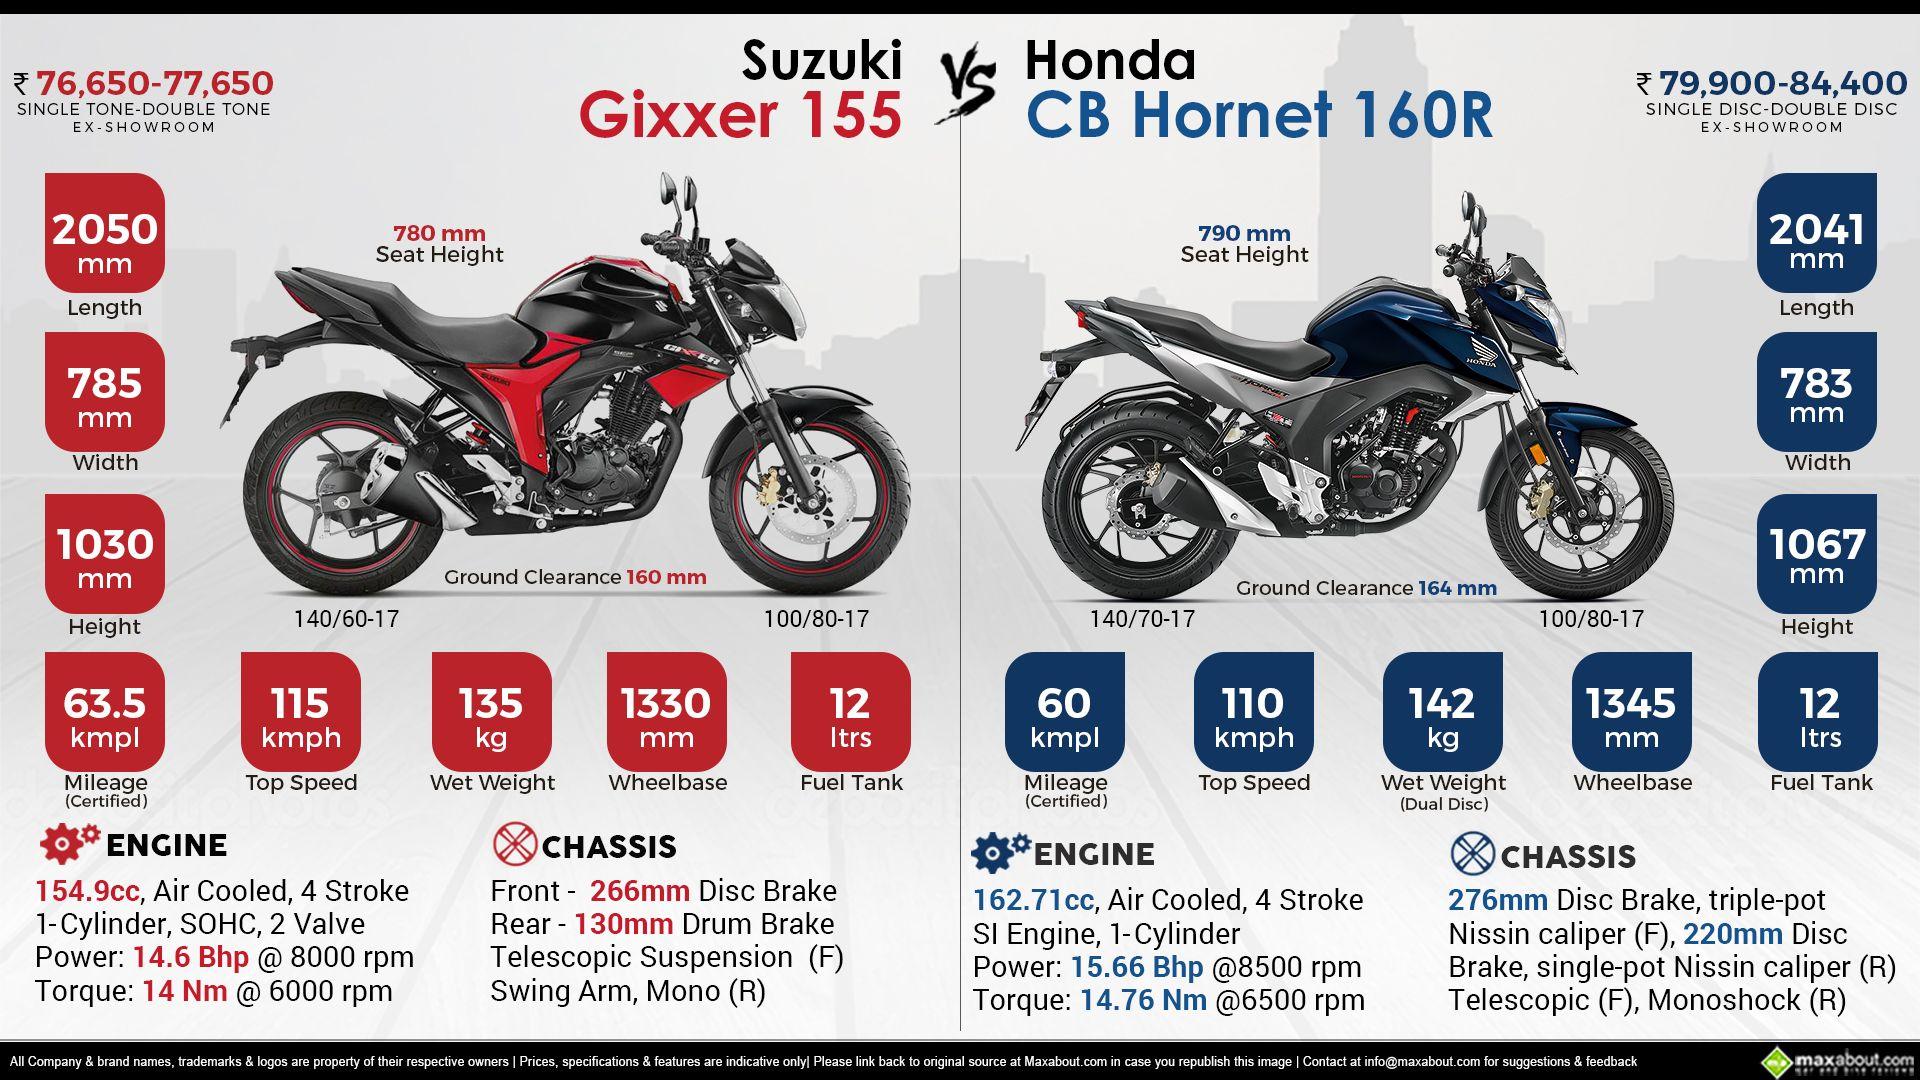 Honda CB Hornet 160R vs. Suzuki Gixxer 155